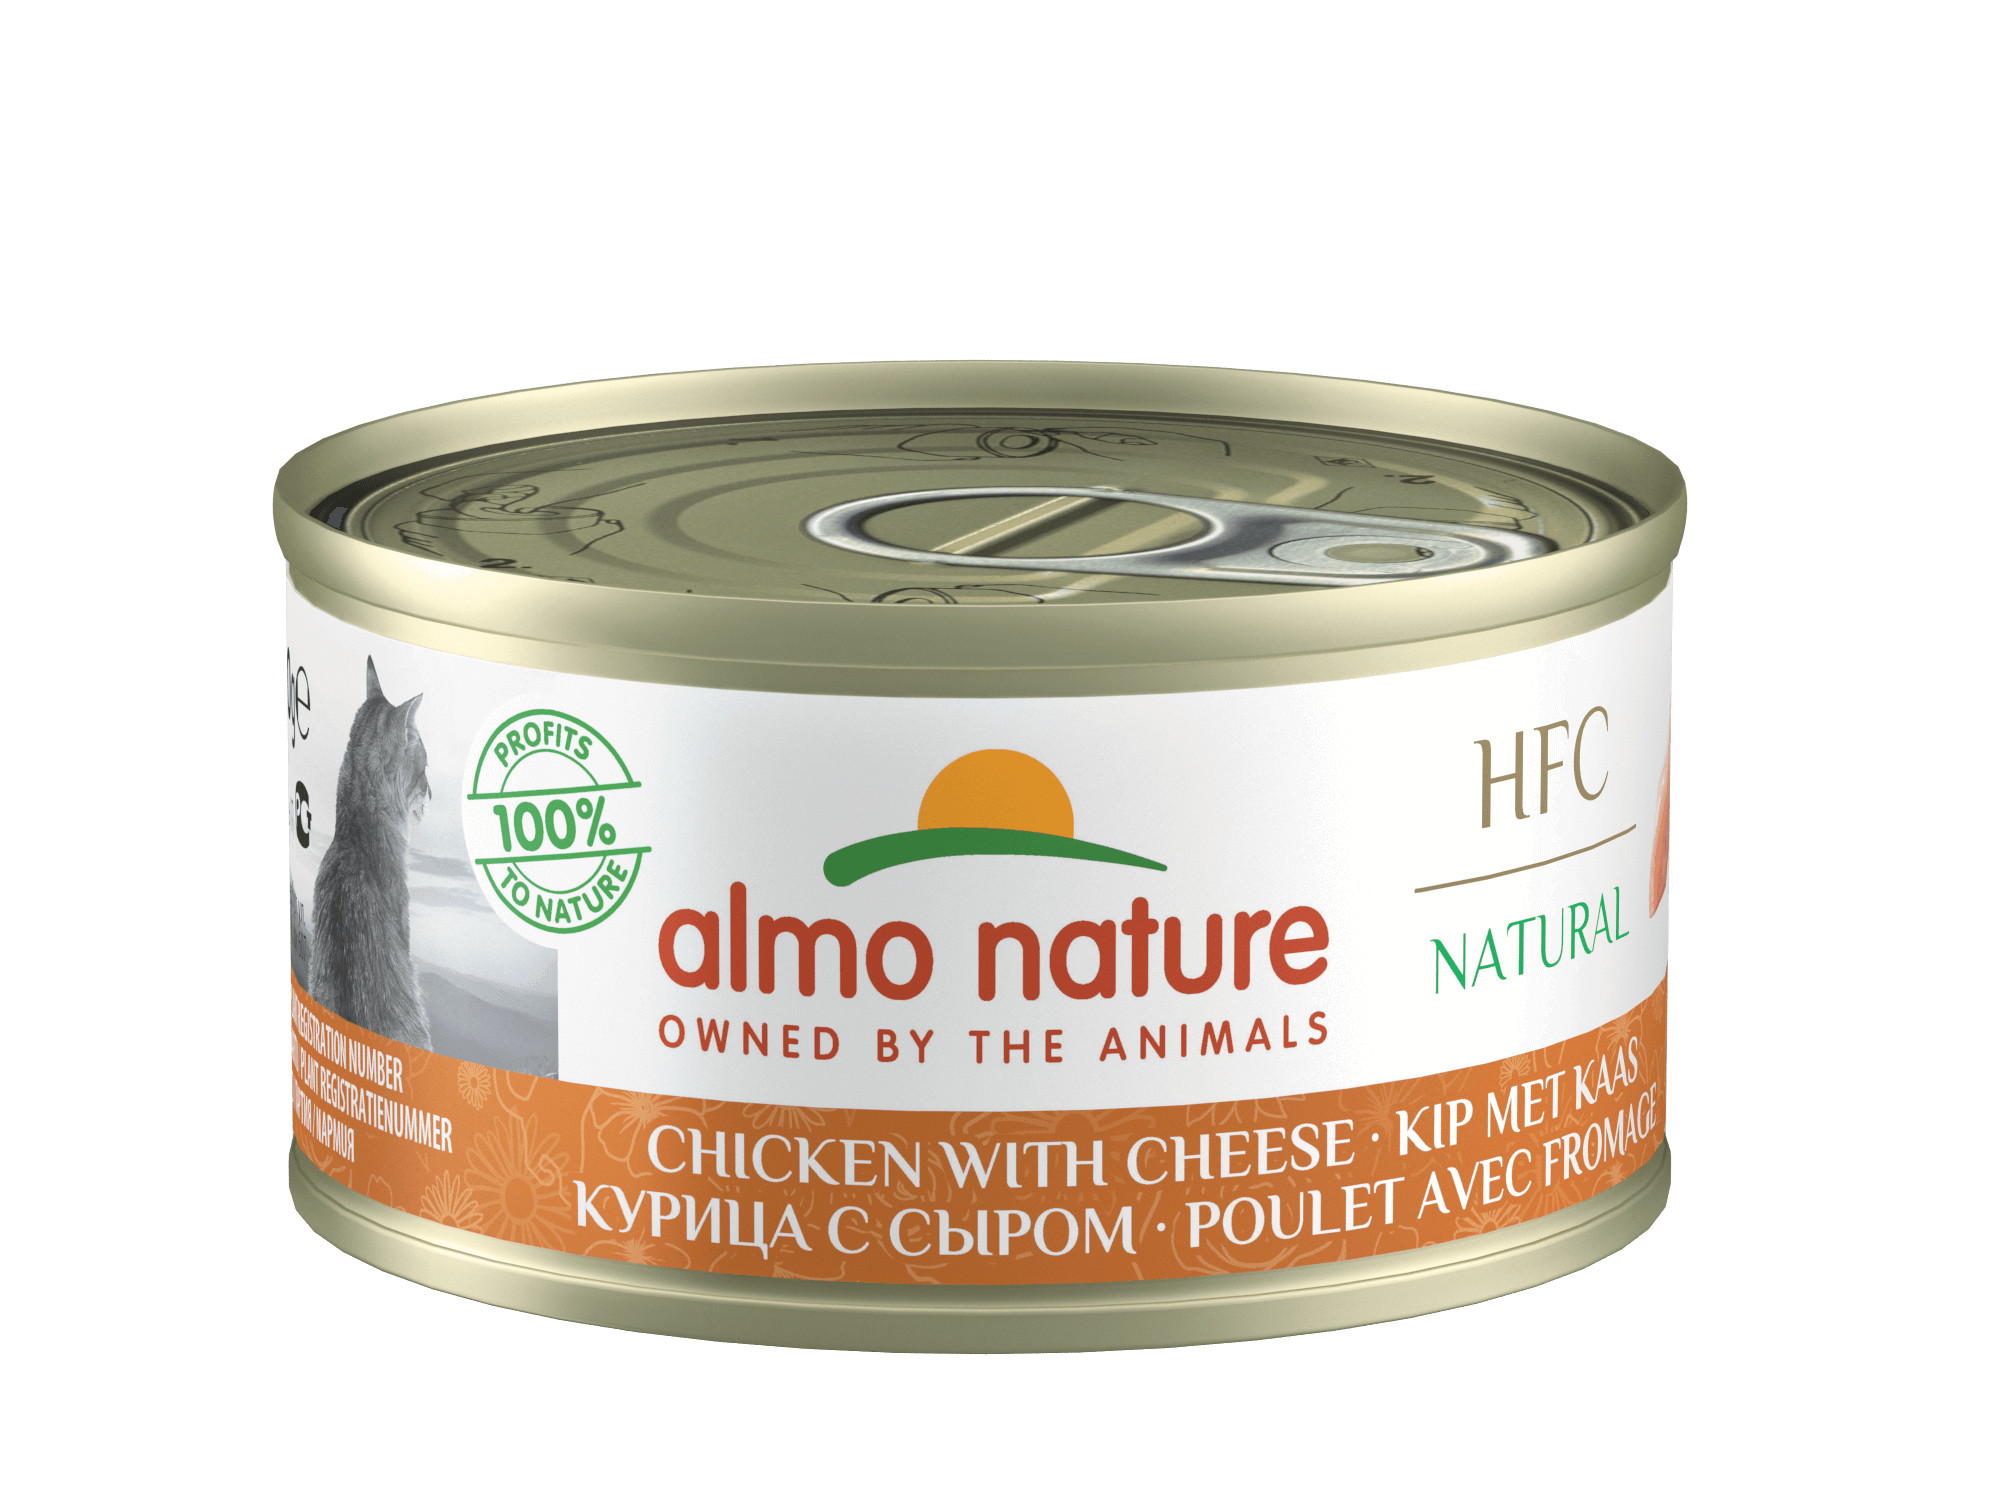 Almo Nature Natural pâtée pour chat au poulet et fromage (70 g)